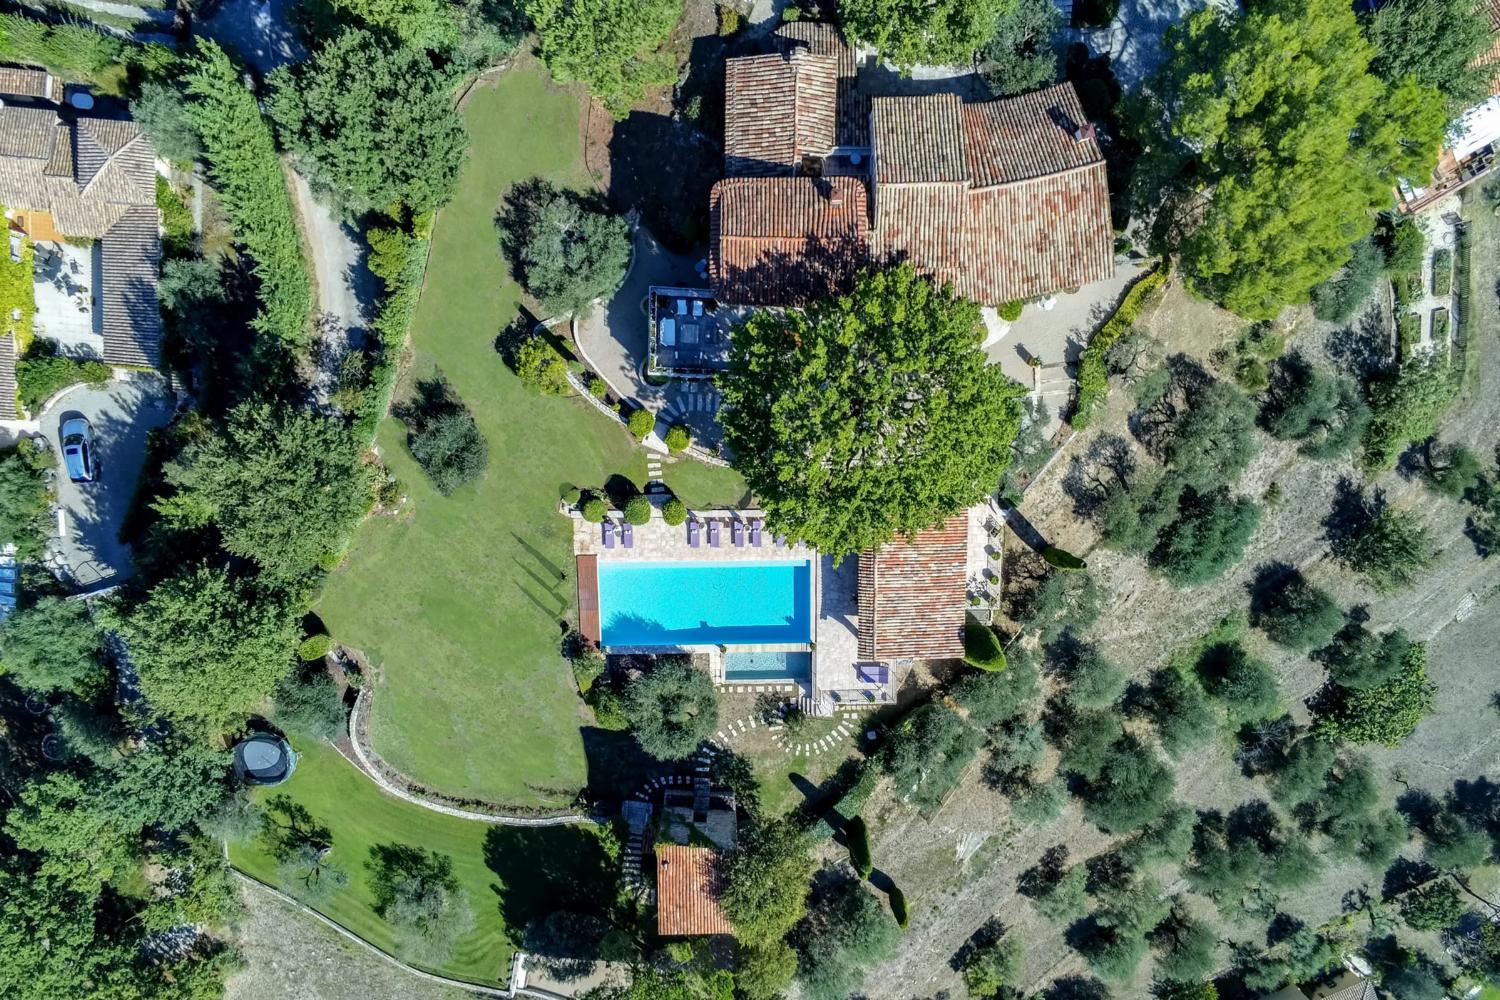 Maison de vacances en Provence avec piscine privée chauffée